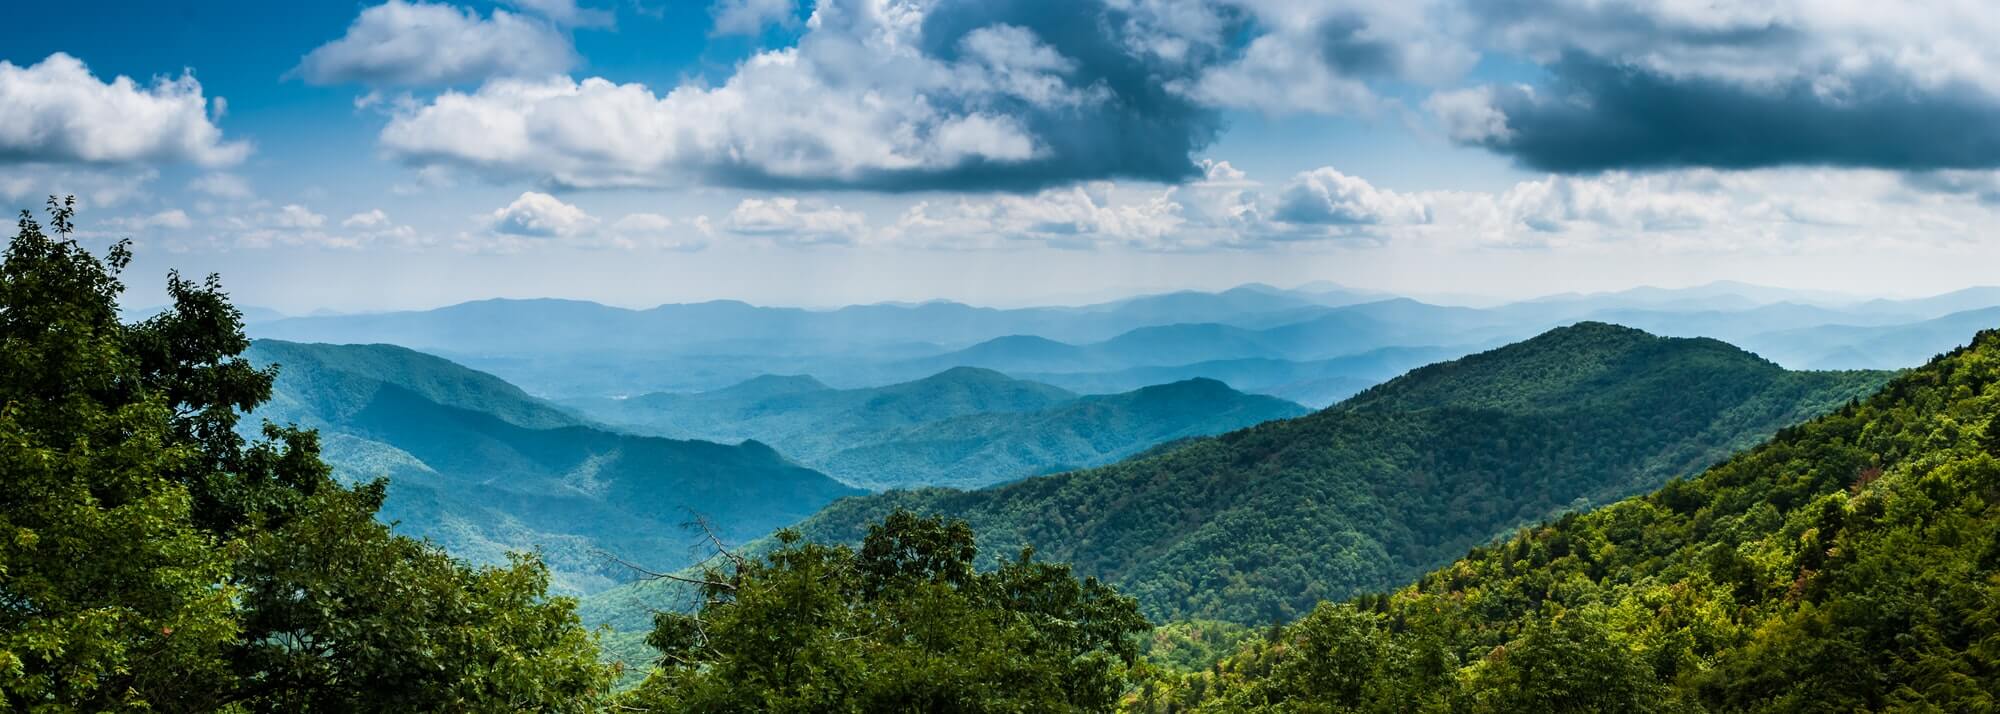 Smoky Mountain panorama